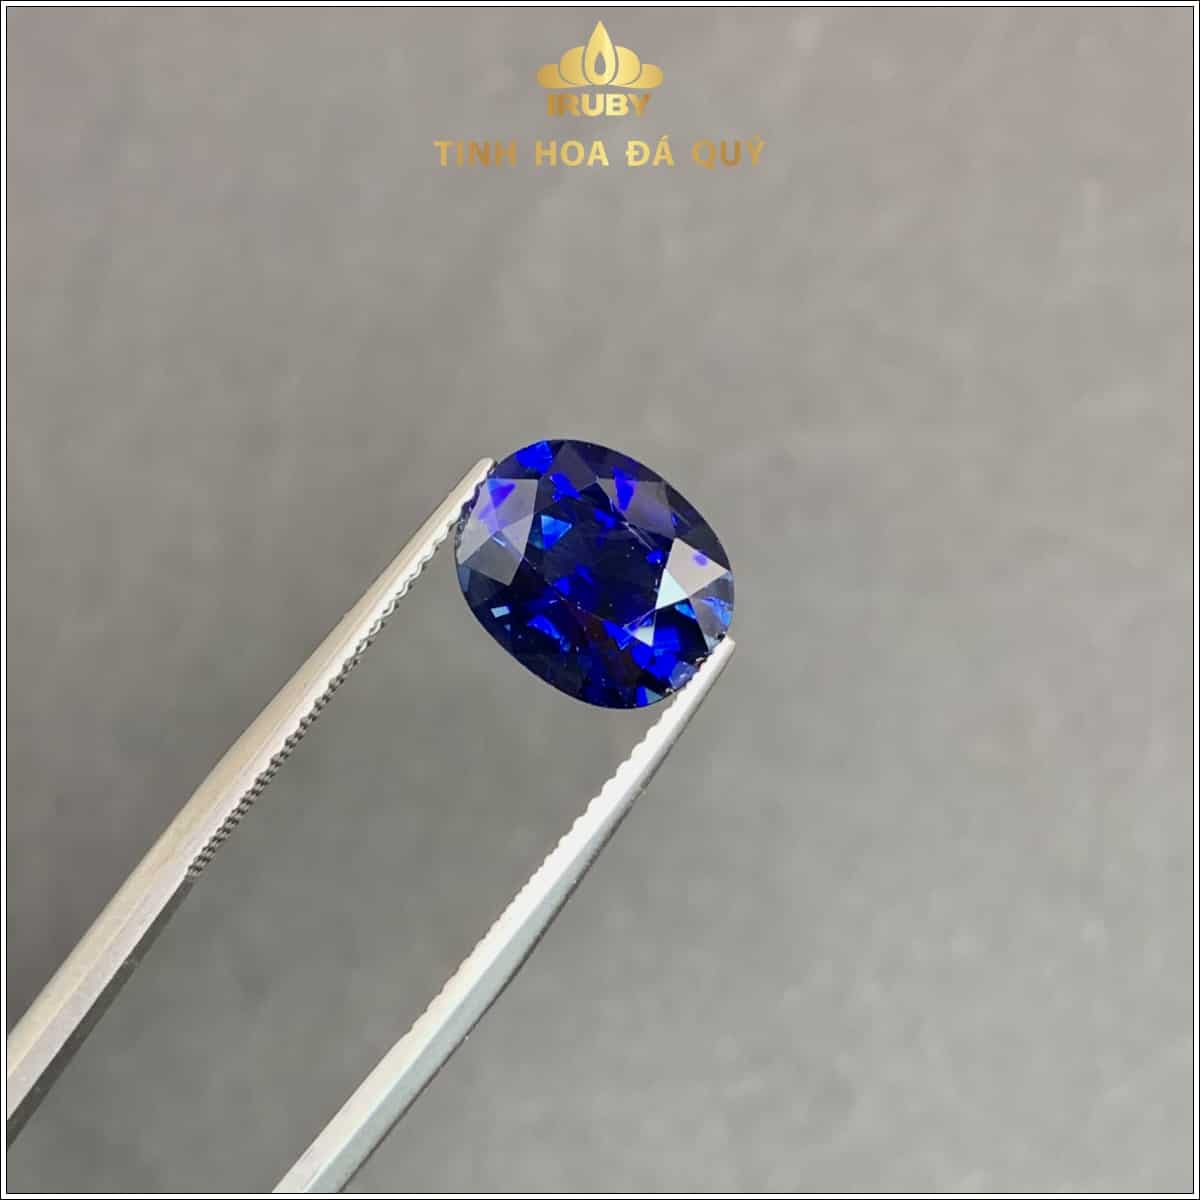 viên Sapphire màu xanh lam hoàng gia 4,43ct - IRSP 235443 hình ảnh 1